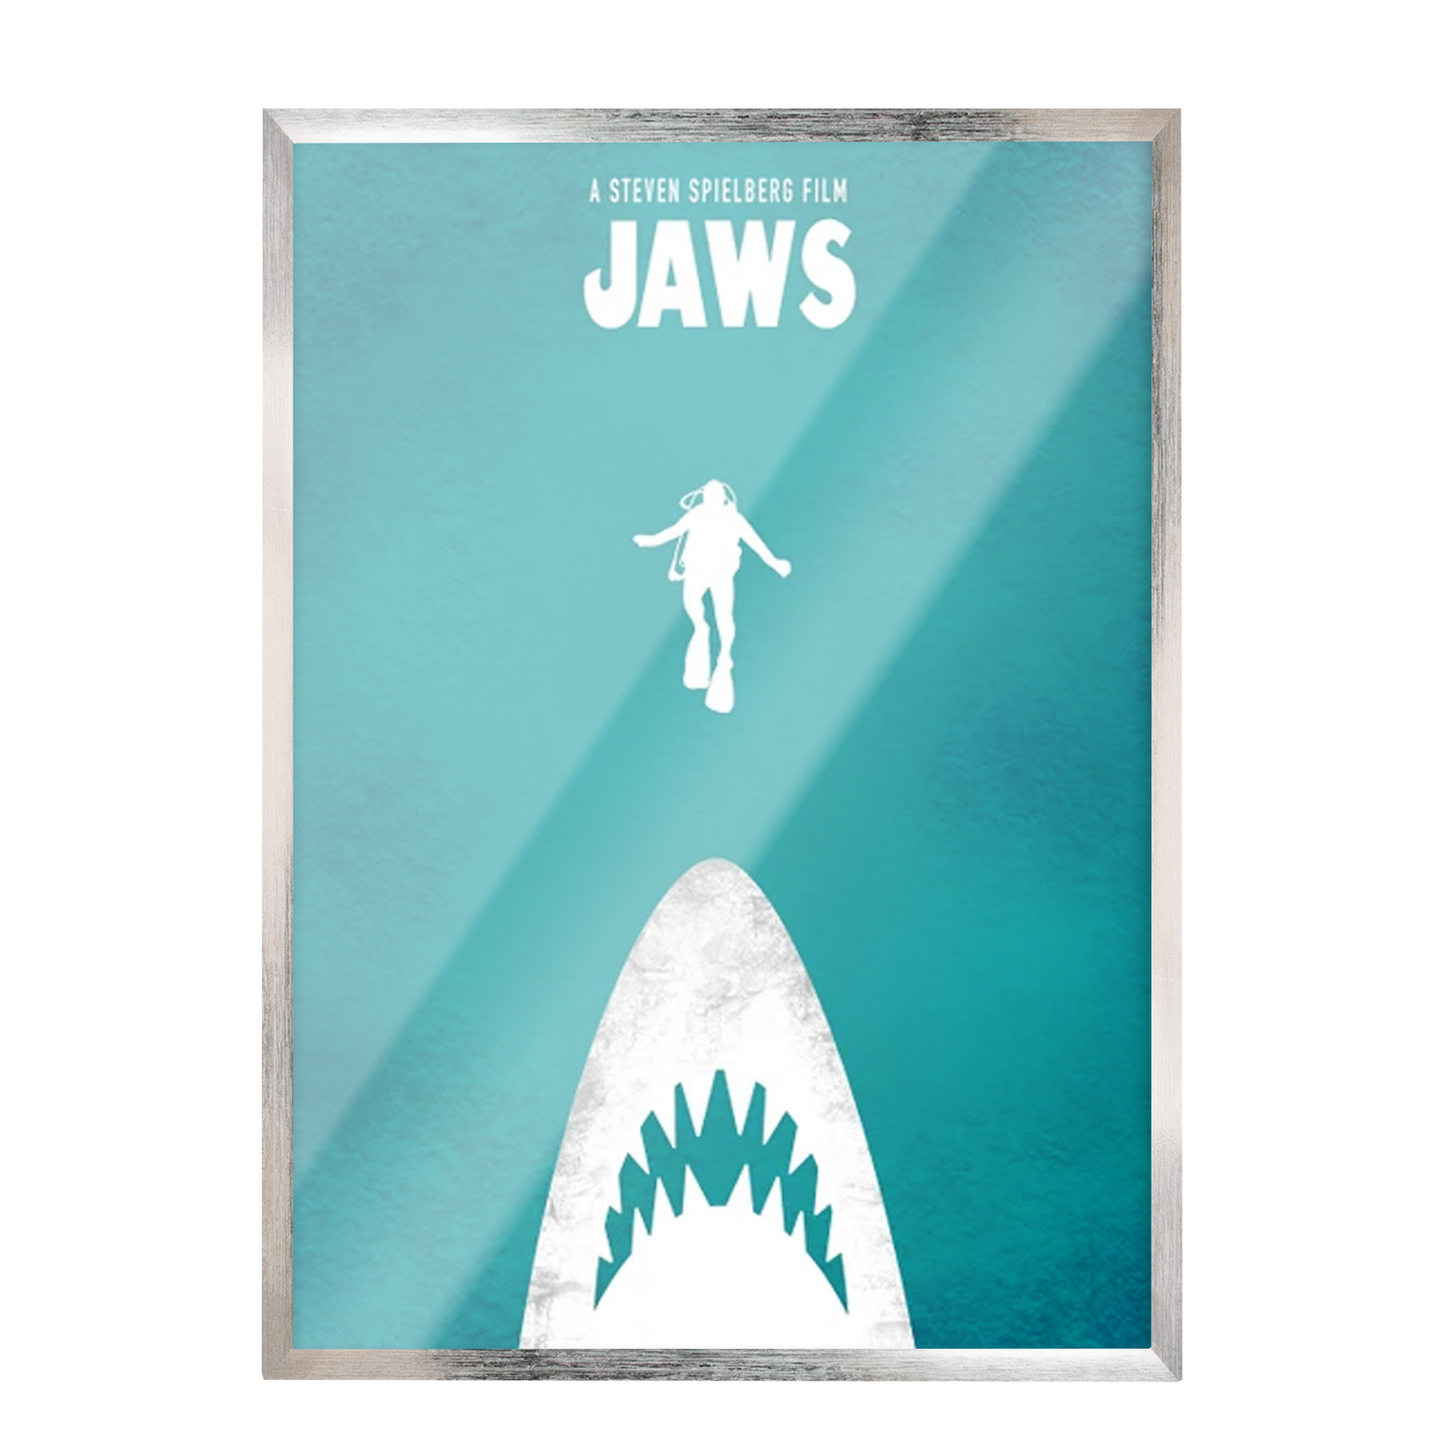 JAWS. El tiburón. Steven Spielberg Cartel de película minimalista. 82